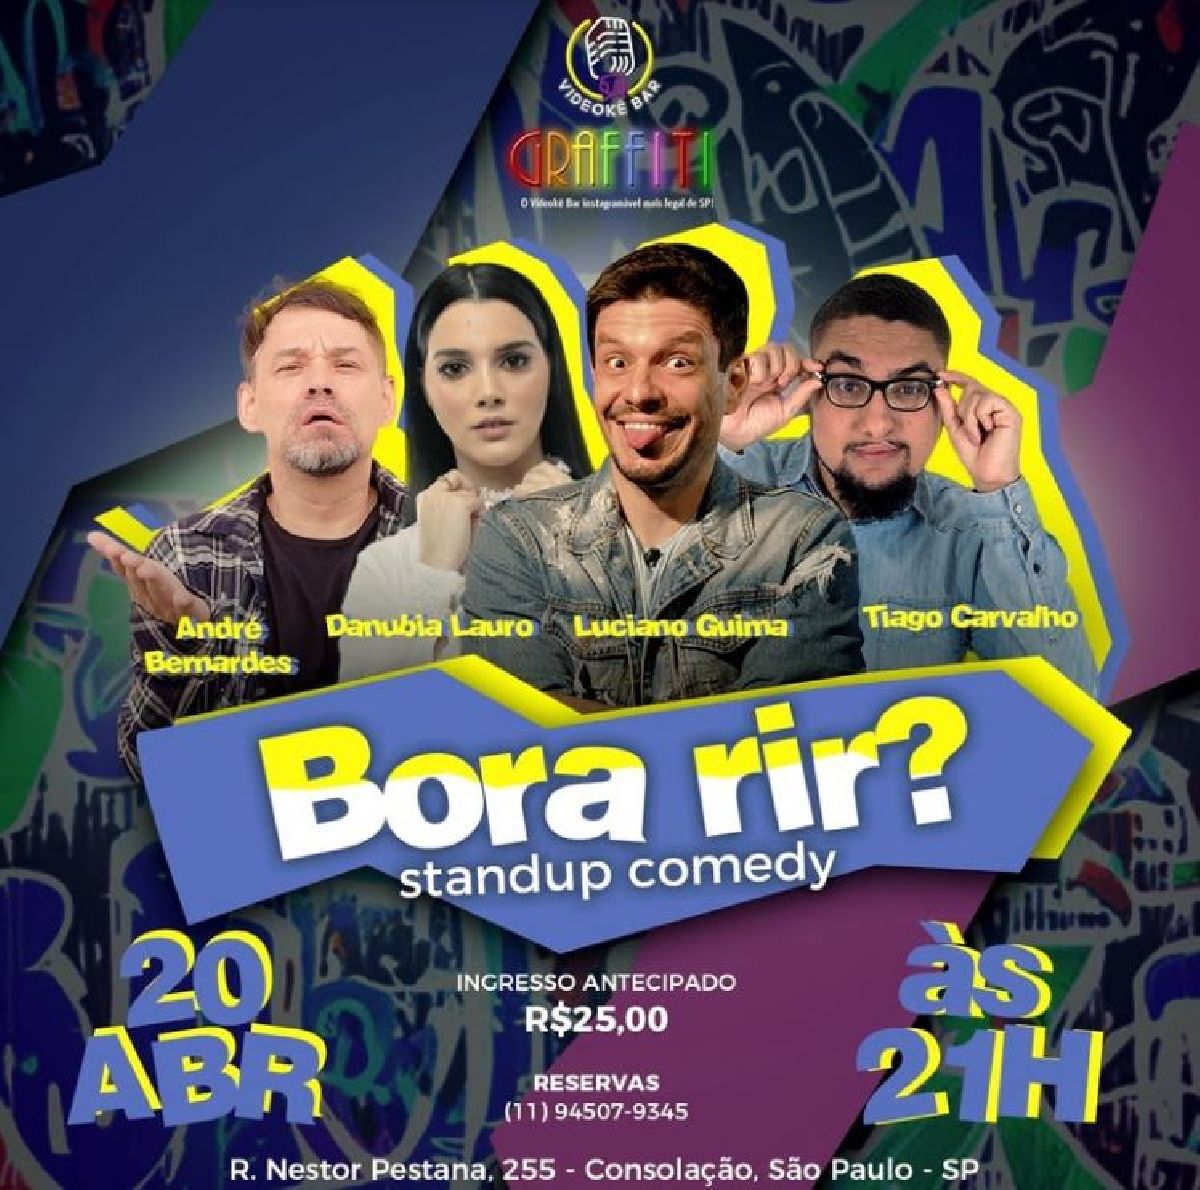 Bora Rir? estreia no Graffiti -- Videokê Bar com os comediantes  André Bernardes, Danubia Lauro, Luciano Guima e Tiago Carvalho